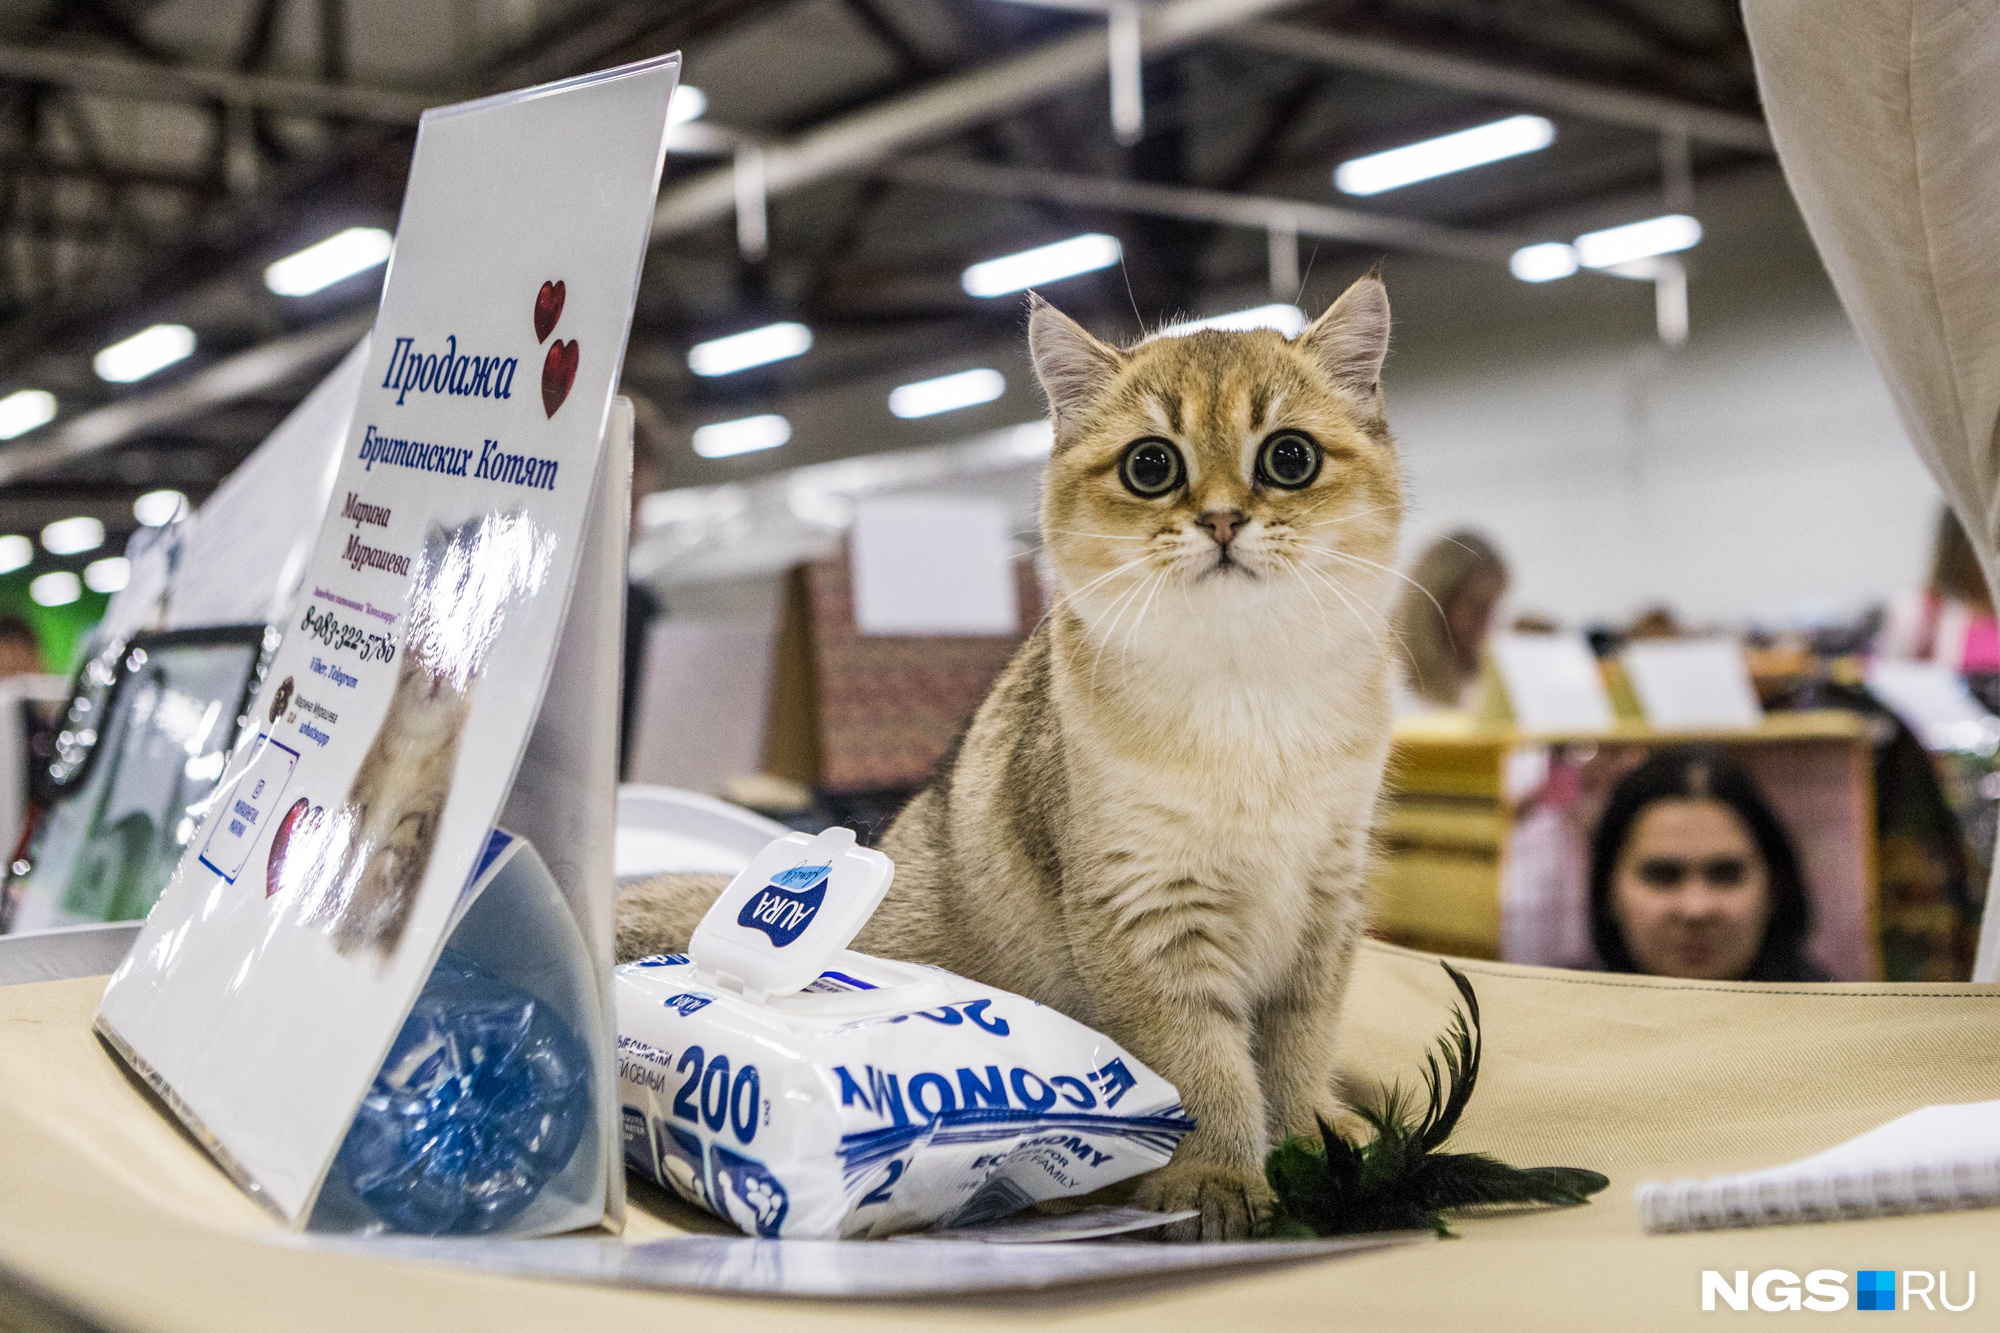 Всемирная выставка пушистых кошек. Конкурс кошек на мировой выставке. Участники международной выставки кошек в Новосибирске 2020. Конкурс кошек на мировой выставке зарегистрироваться.